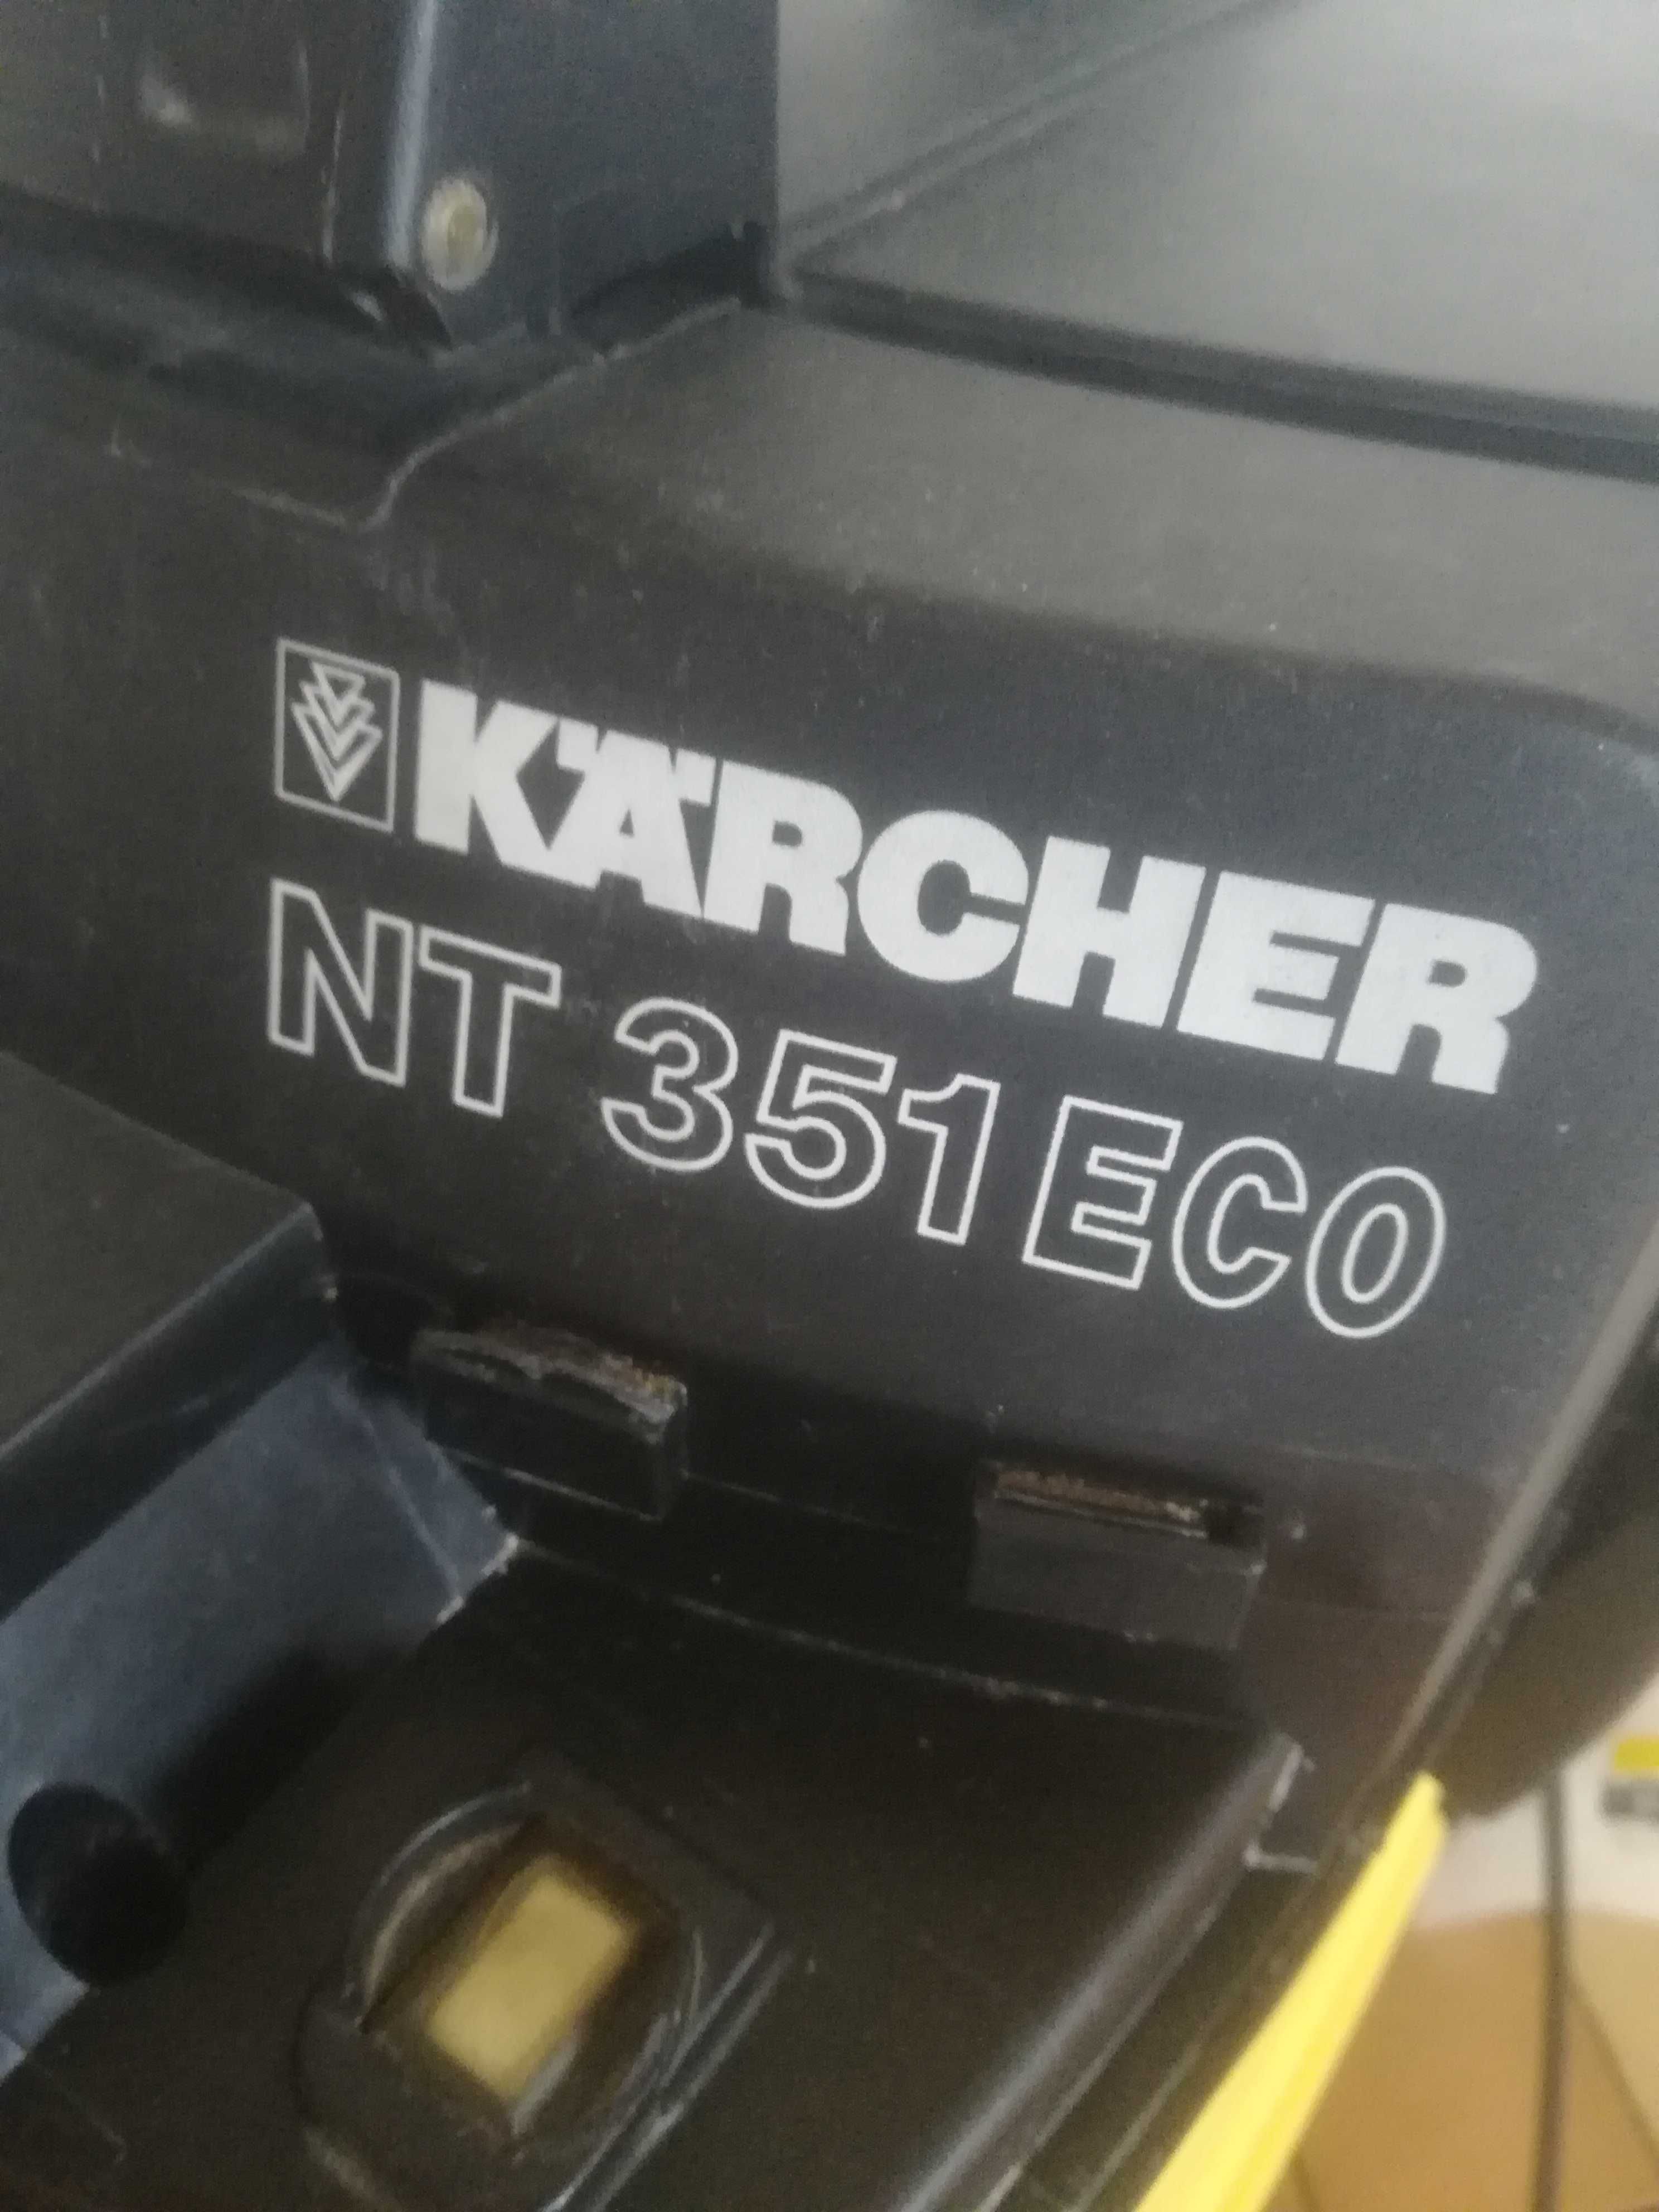 Aspirador Karcher nt  351 eco